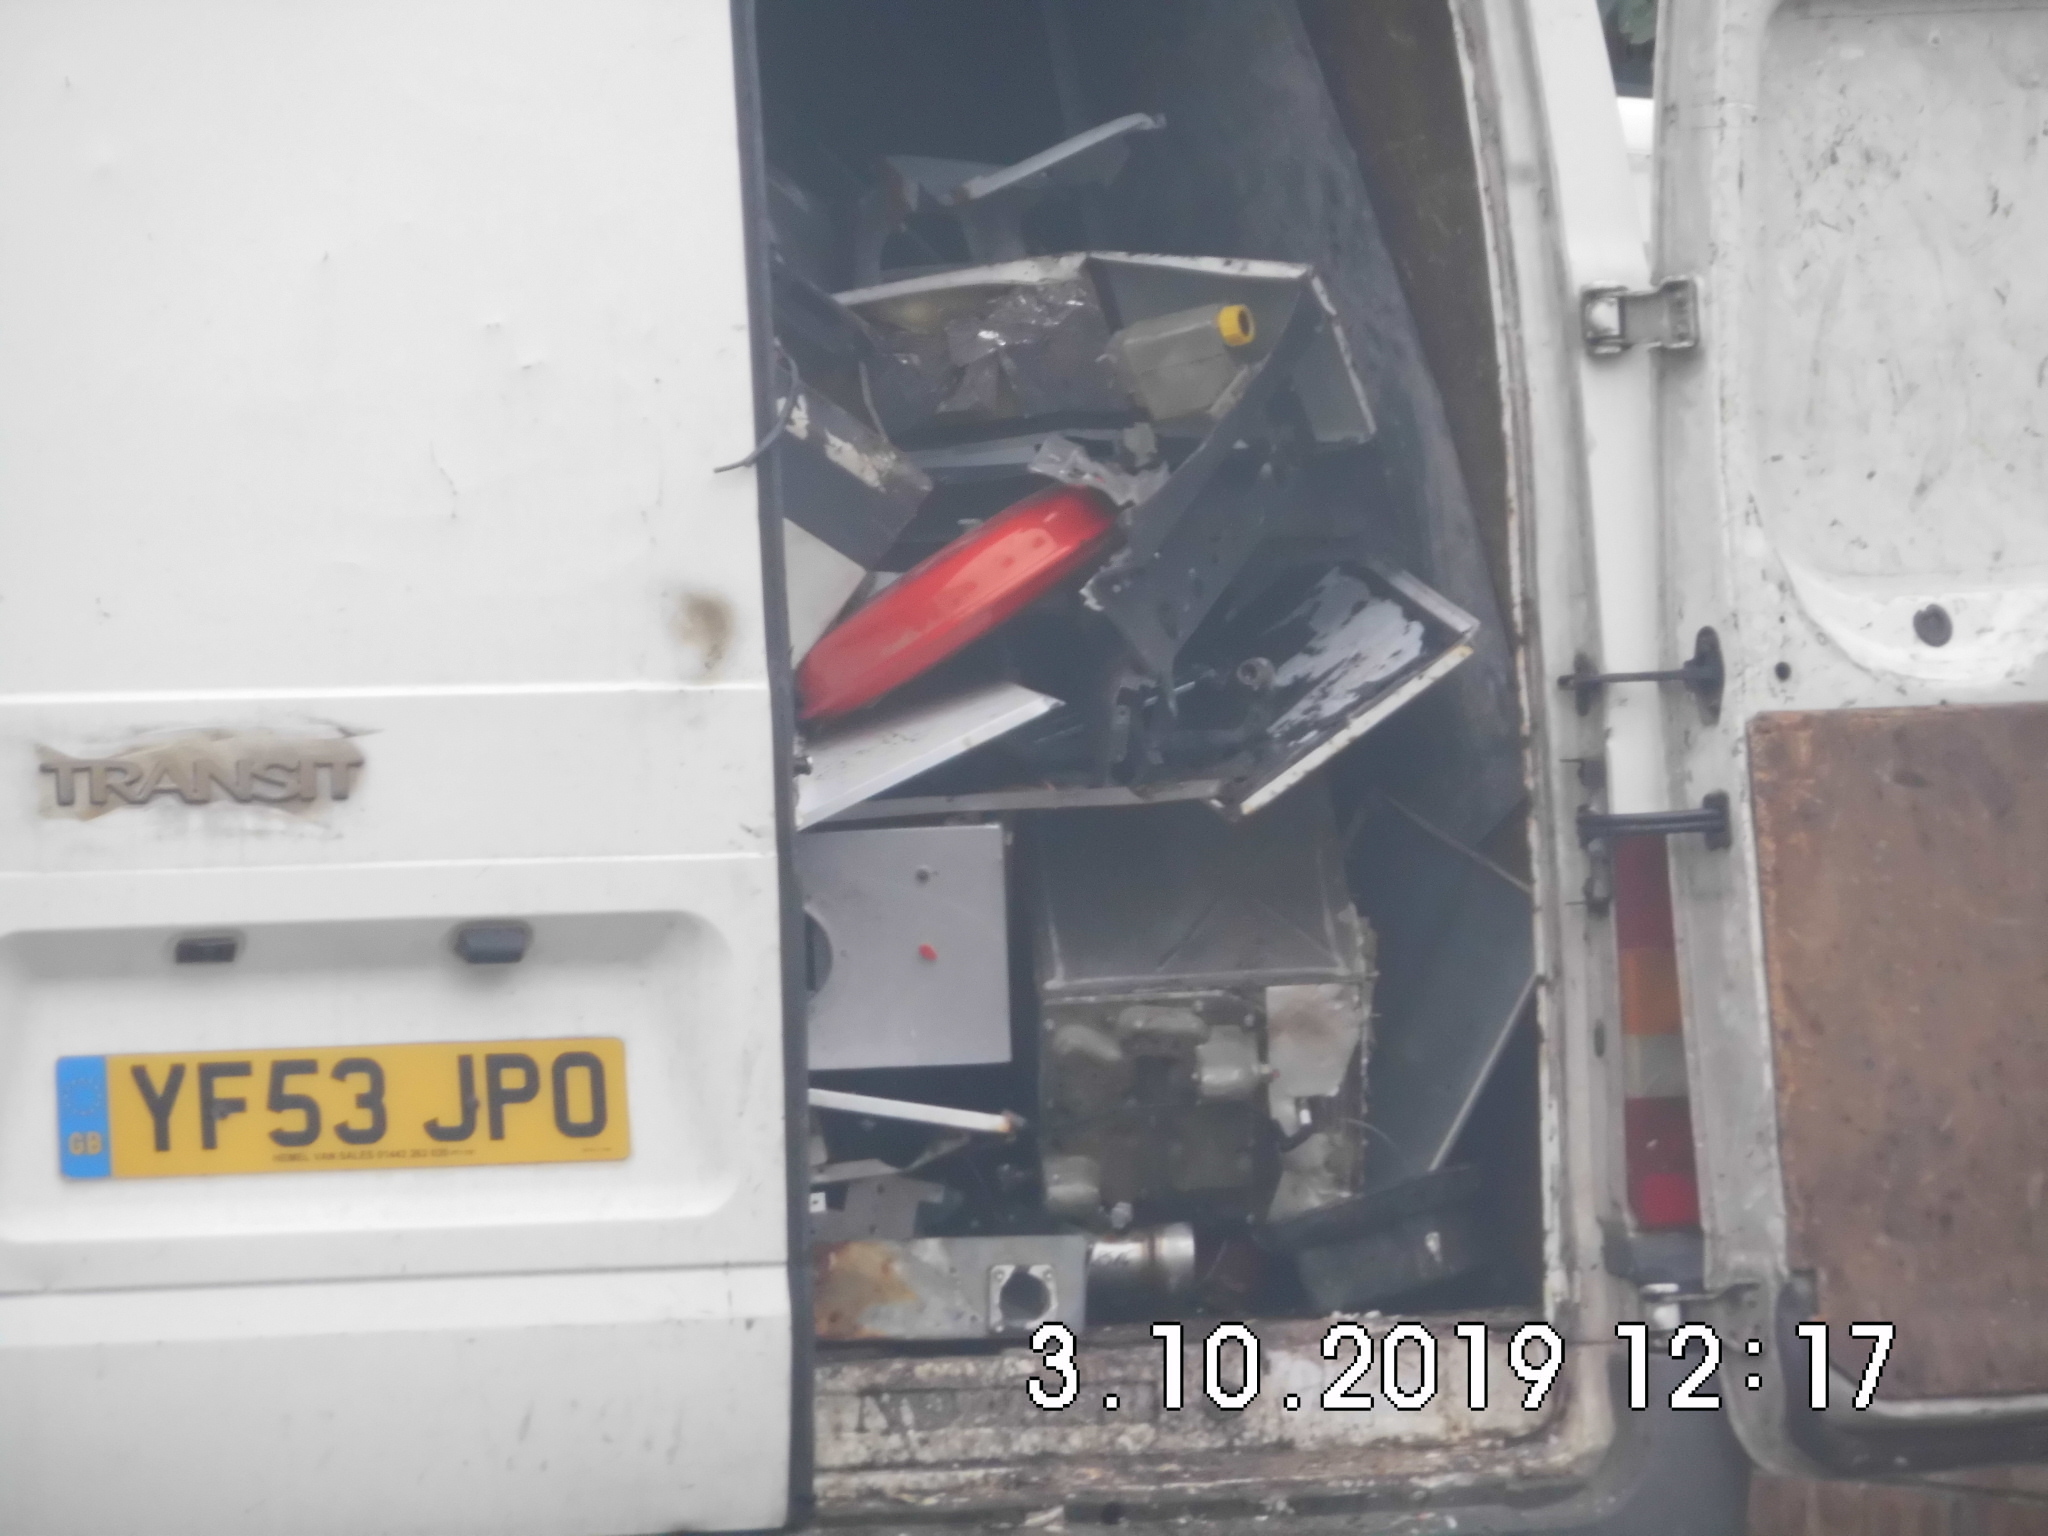 Waste piled up in Ms Nicolae’s van